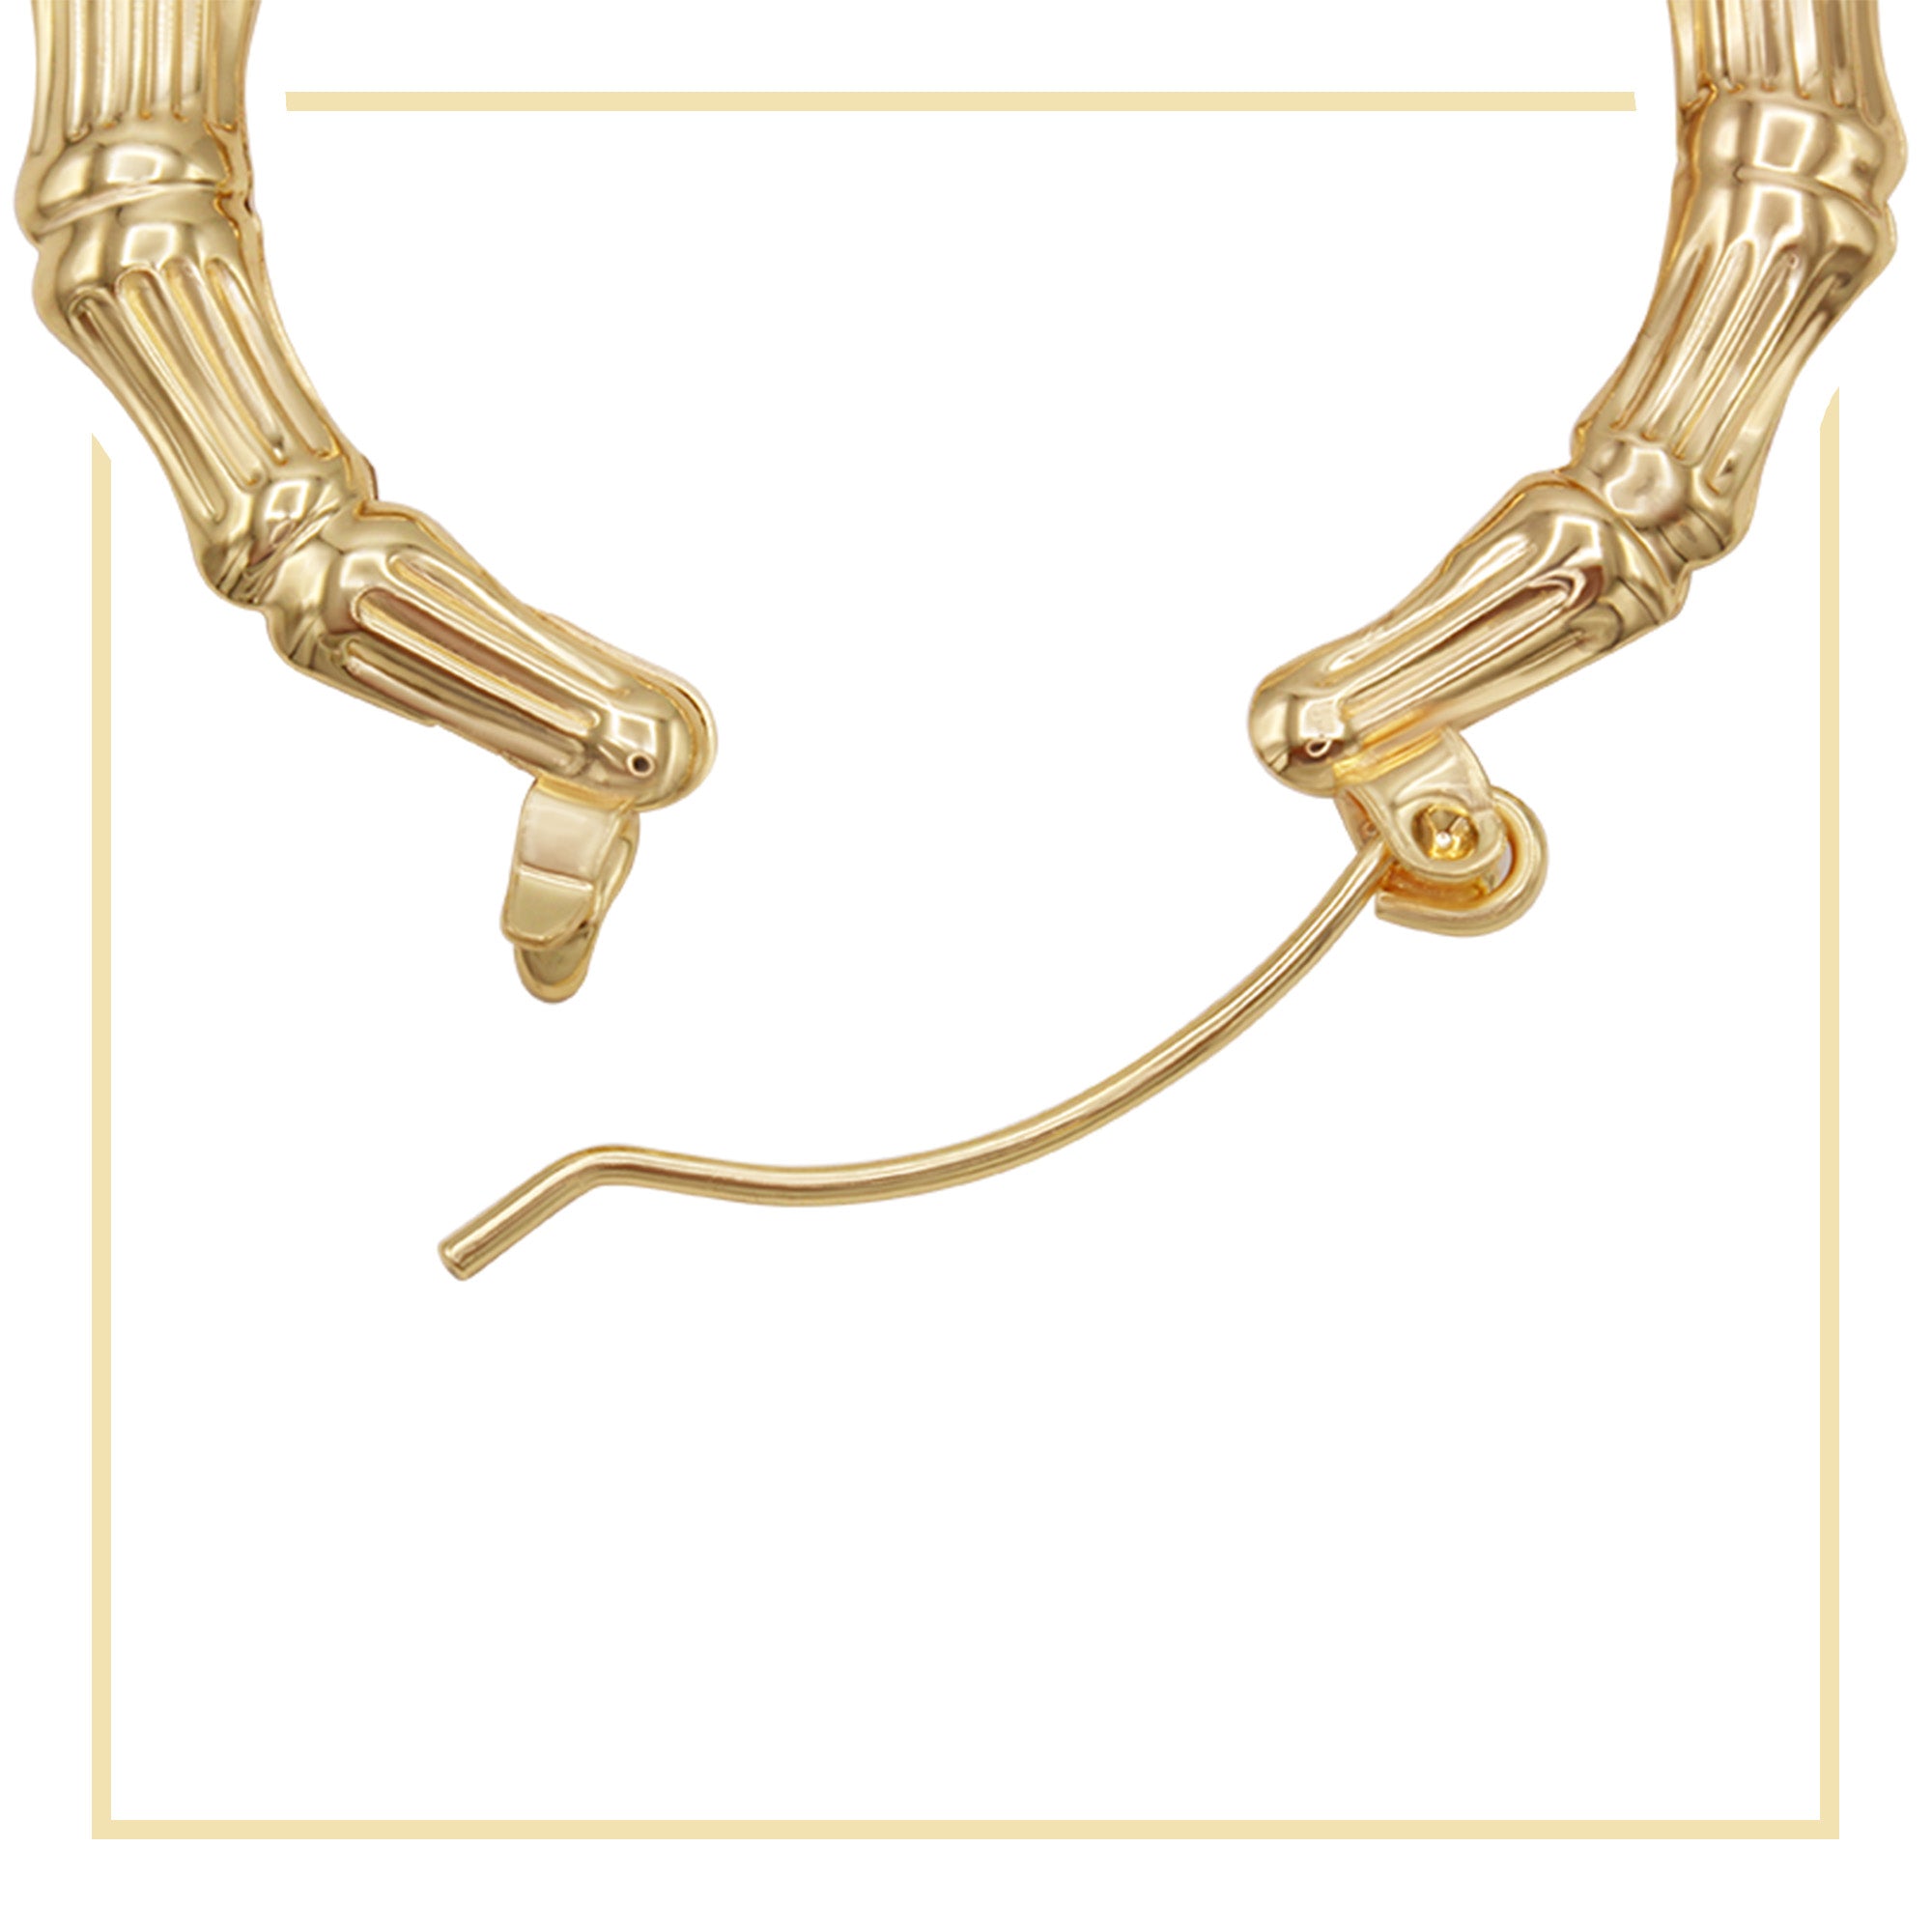 Bamboo Hoop Earrings 14K Gold Plated Women Jewelry 40 mm